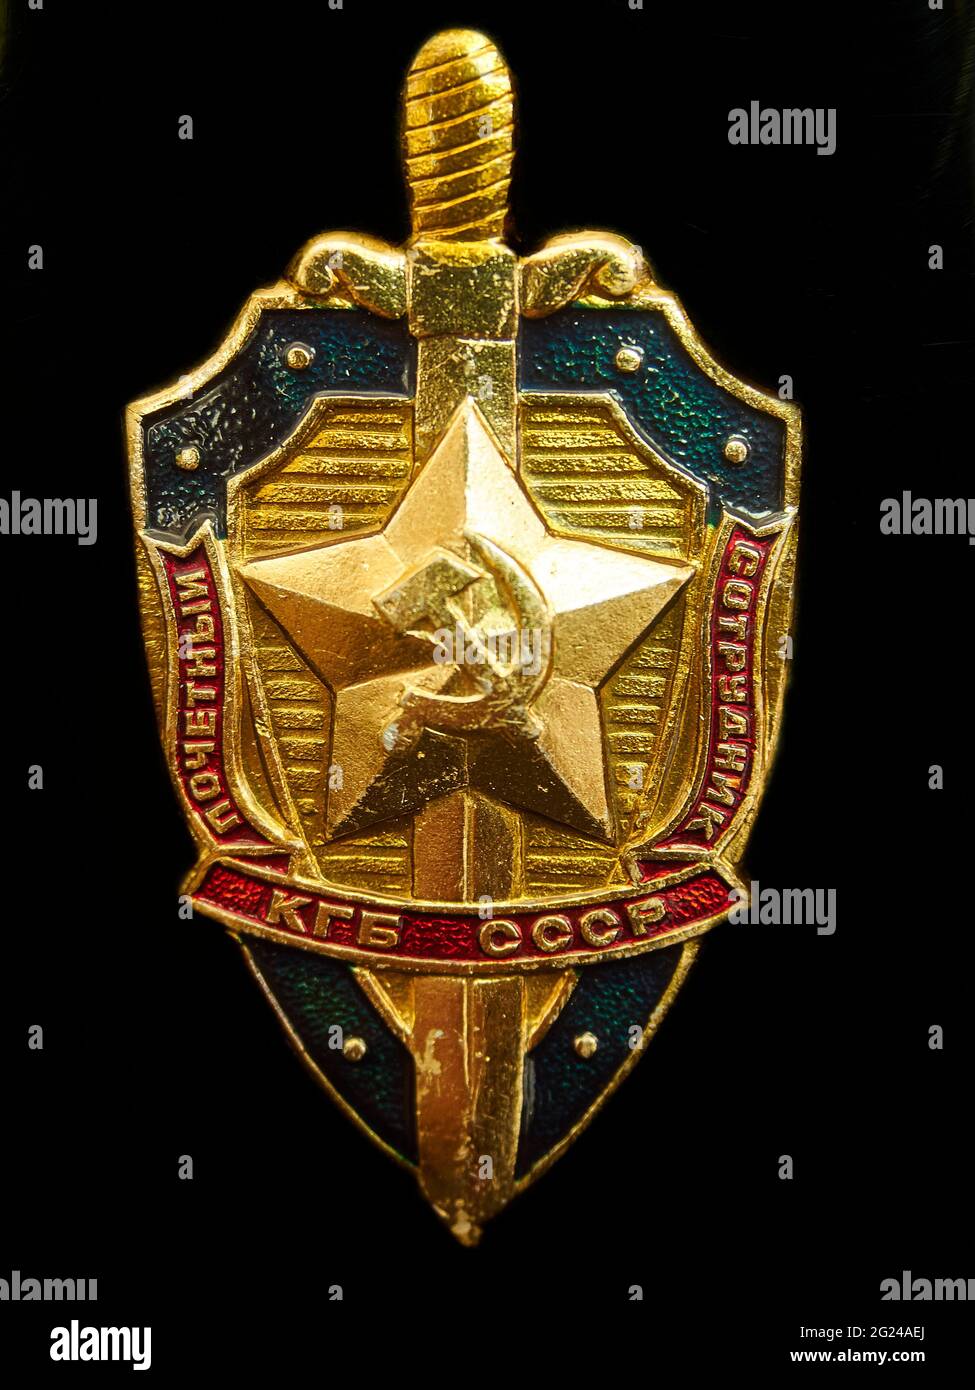 Bildliches, repräsentatives Bild des Abzeichen / Insignien der KGB-Sicherheitsbehörde, angebracht an einer Metallflasche (vom Fotografen selbst) - schwarzer Hintergrund. Stockfoto